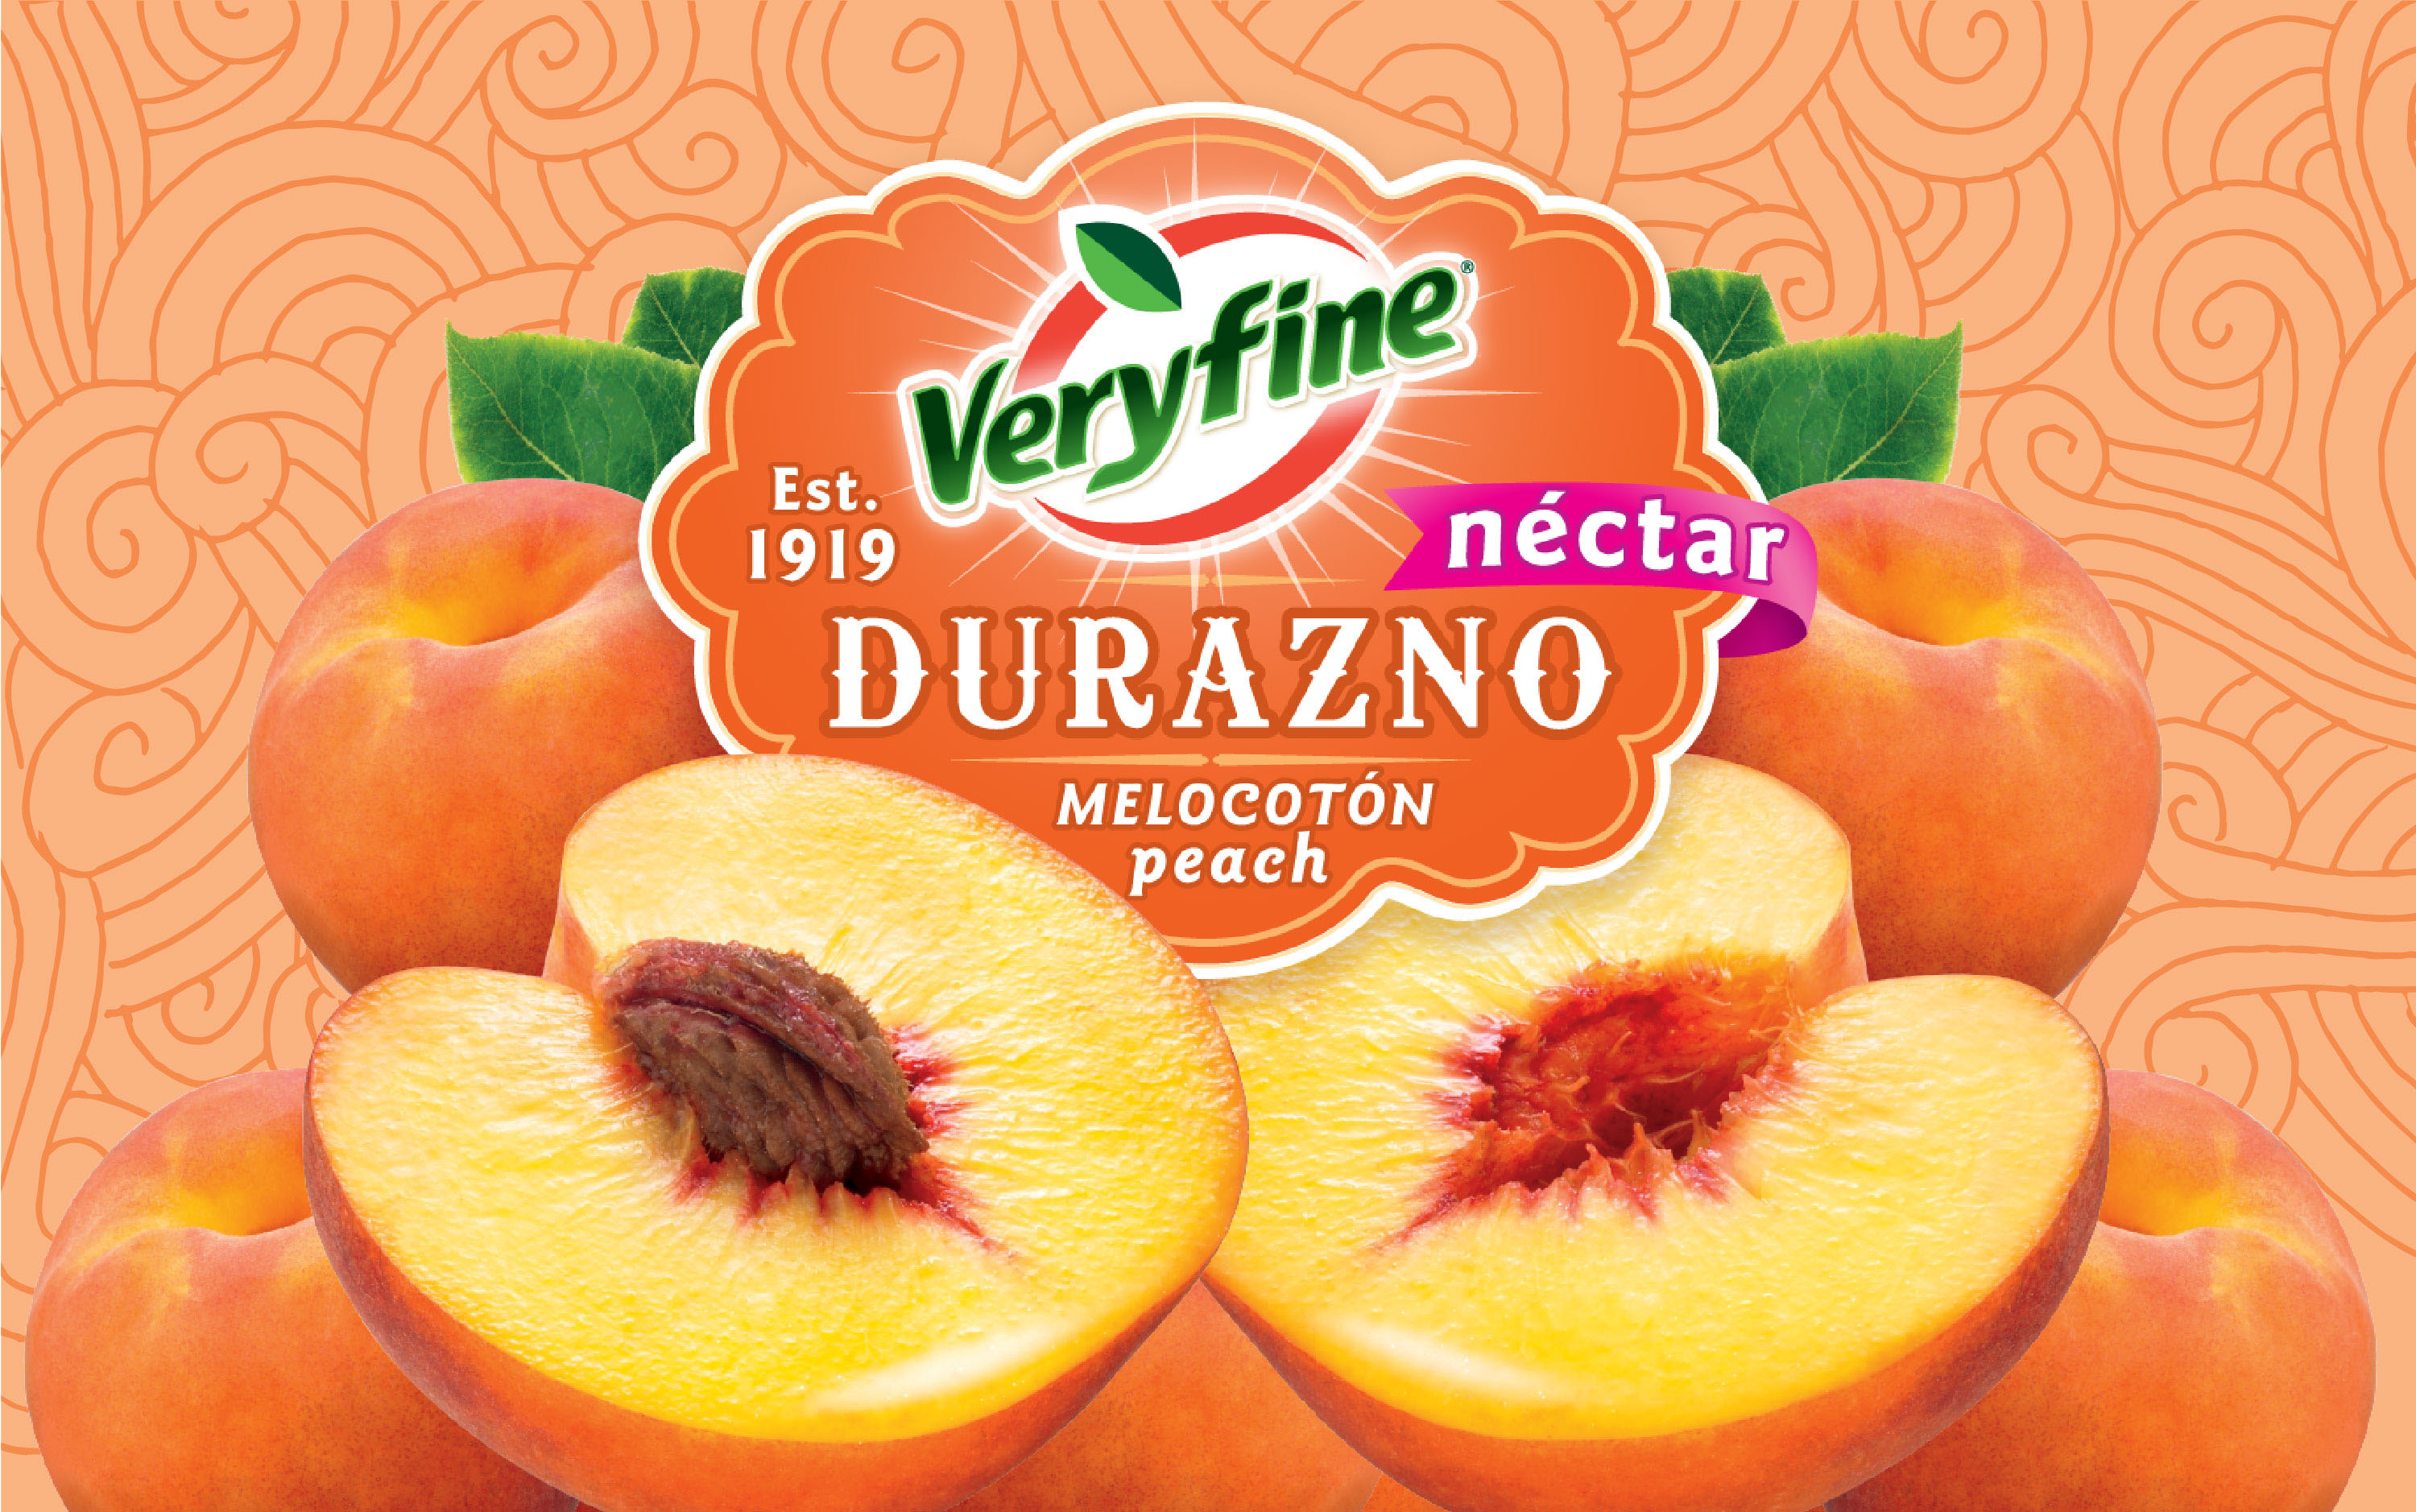 Peach flavored juice Label design